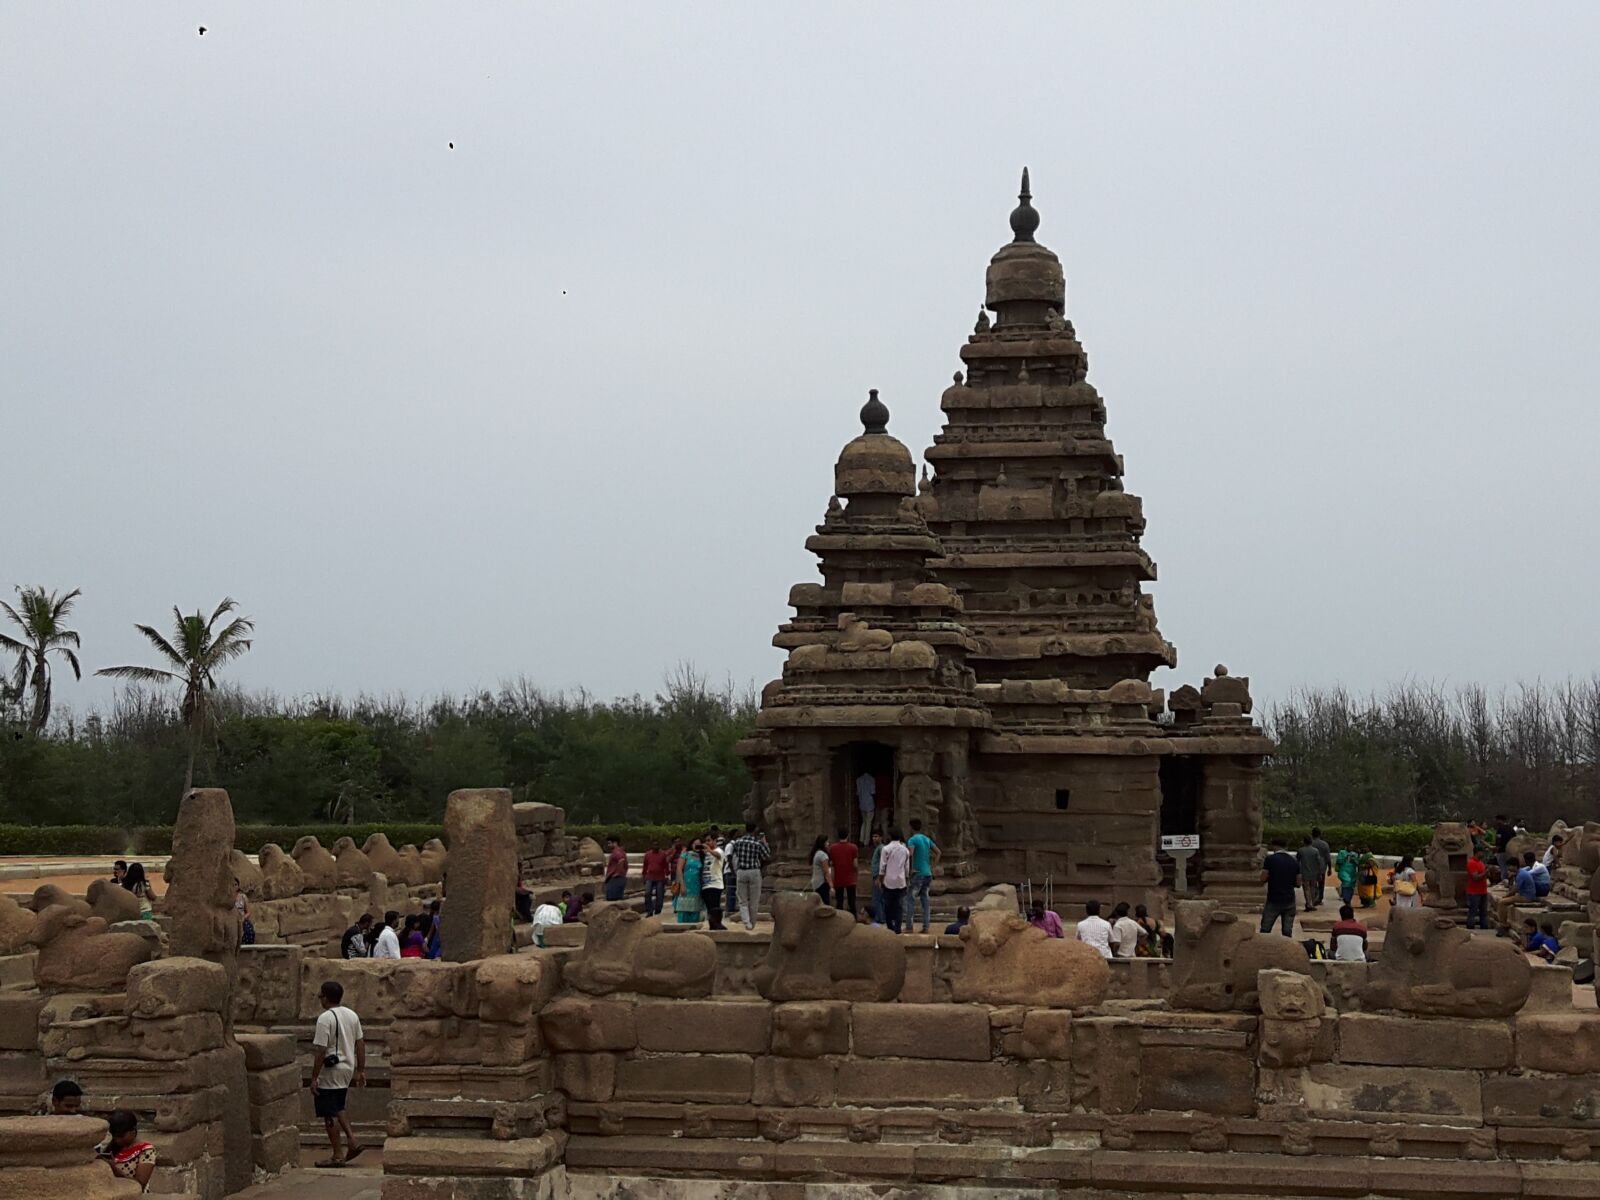 Samsung Galaxy A8 sample photo. Mahabalipuram, ancient, historic photography